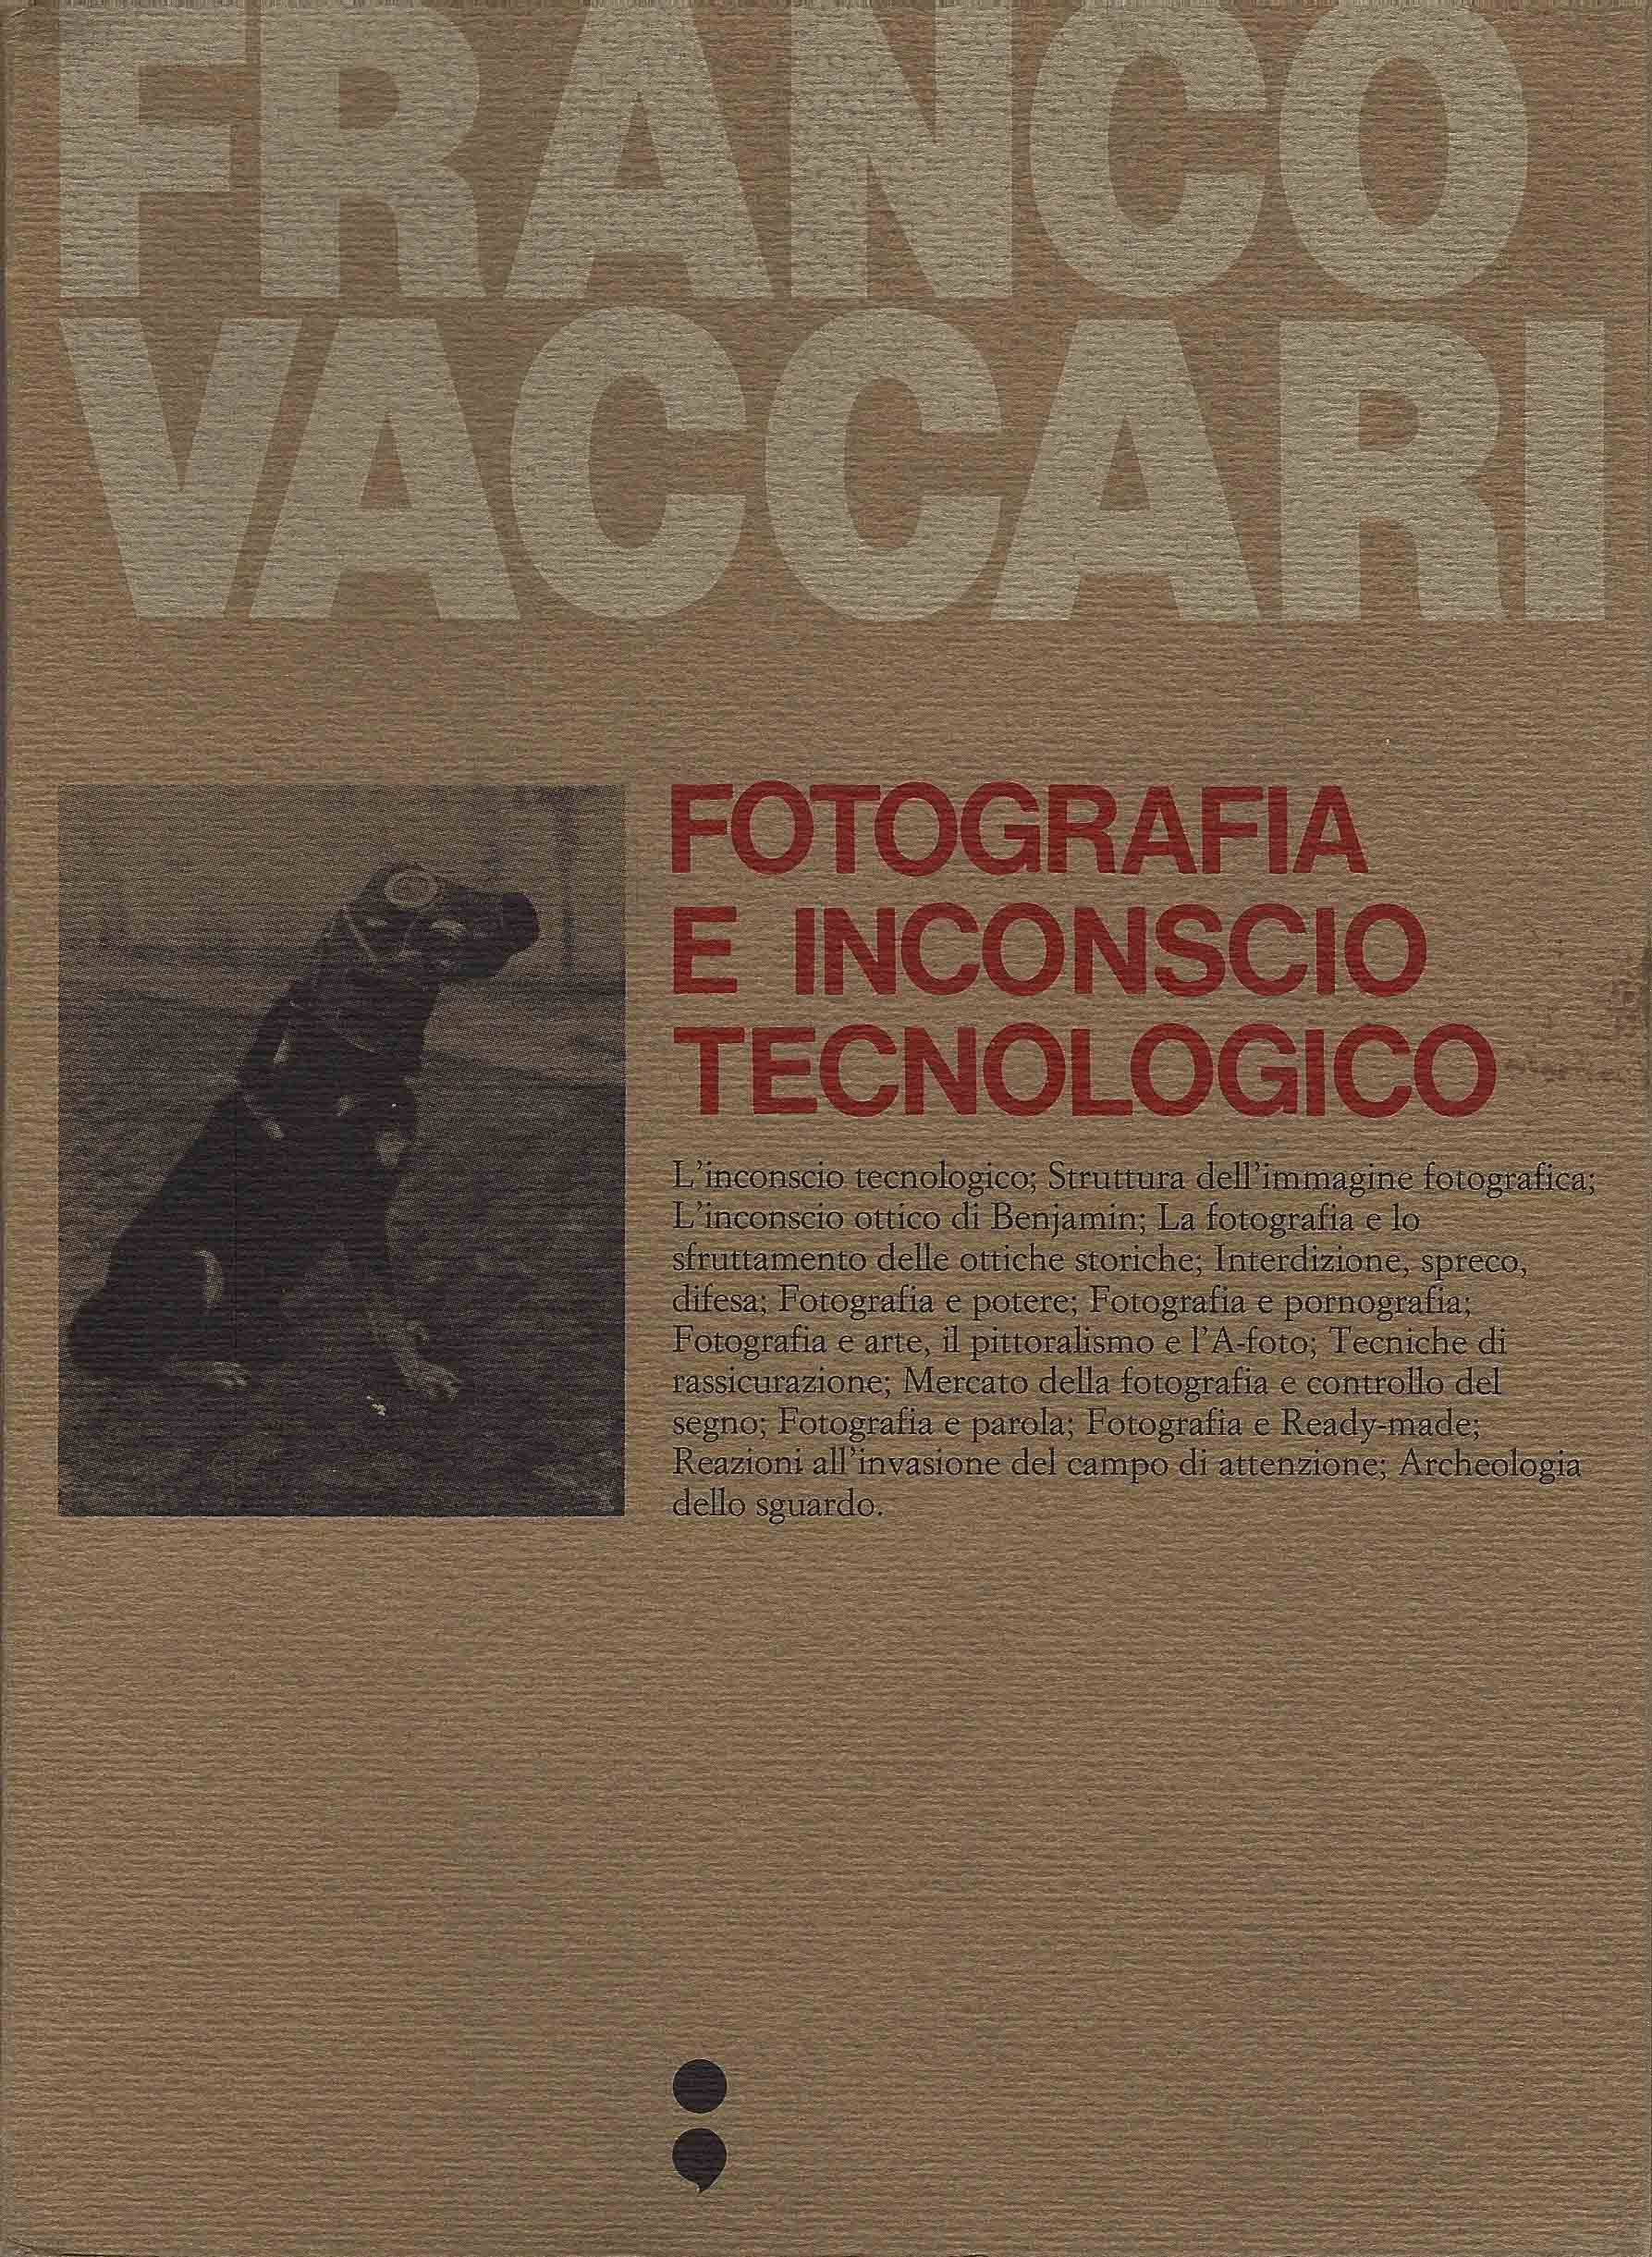 Franco Vaccari - Fotografia e inconscio tecnologico